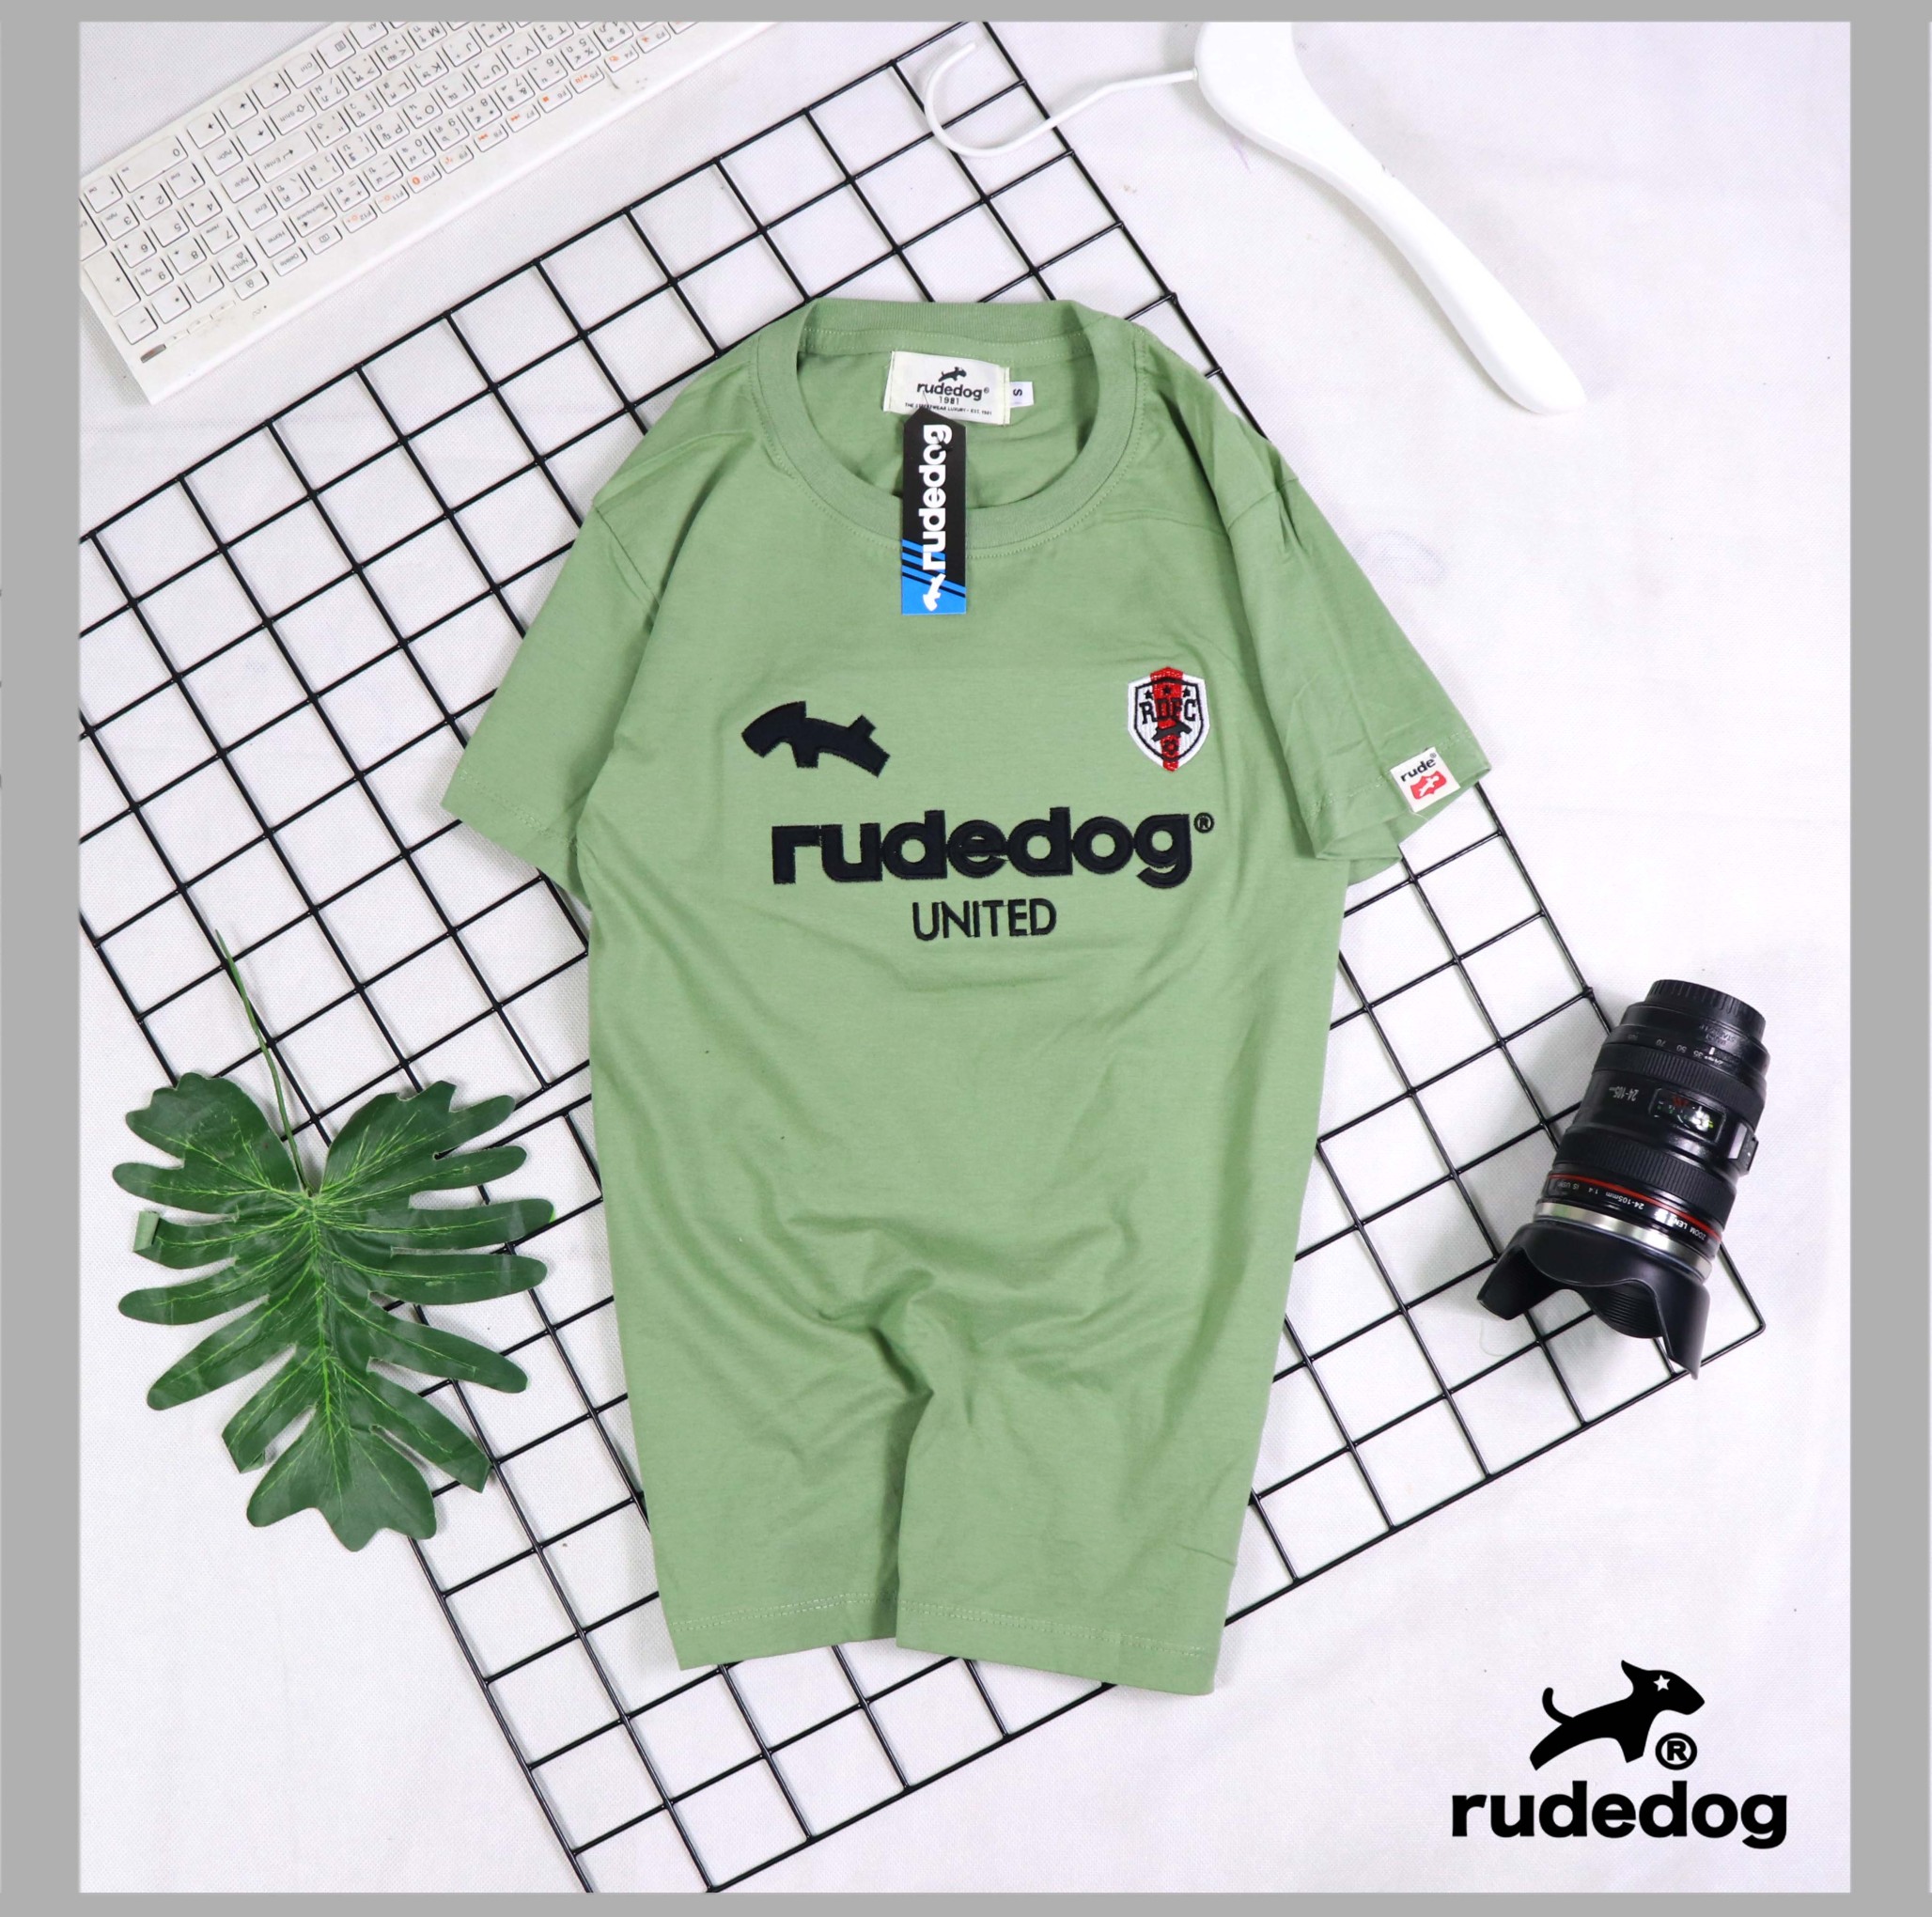 เสื้อยืดคอกลม เสื้อแขนสั้นชายหญิง Rudedog มือ1ใหม่งานป้ายใส่นุ่มสบายระบายผ้าค็อตต้อลแท้ ไซค์S M Lมีหลายสีให้เลือก สินค้าตรงปกพร้อมจัดส่ง